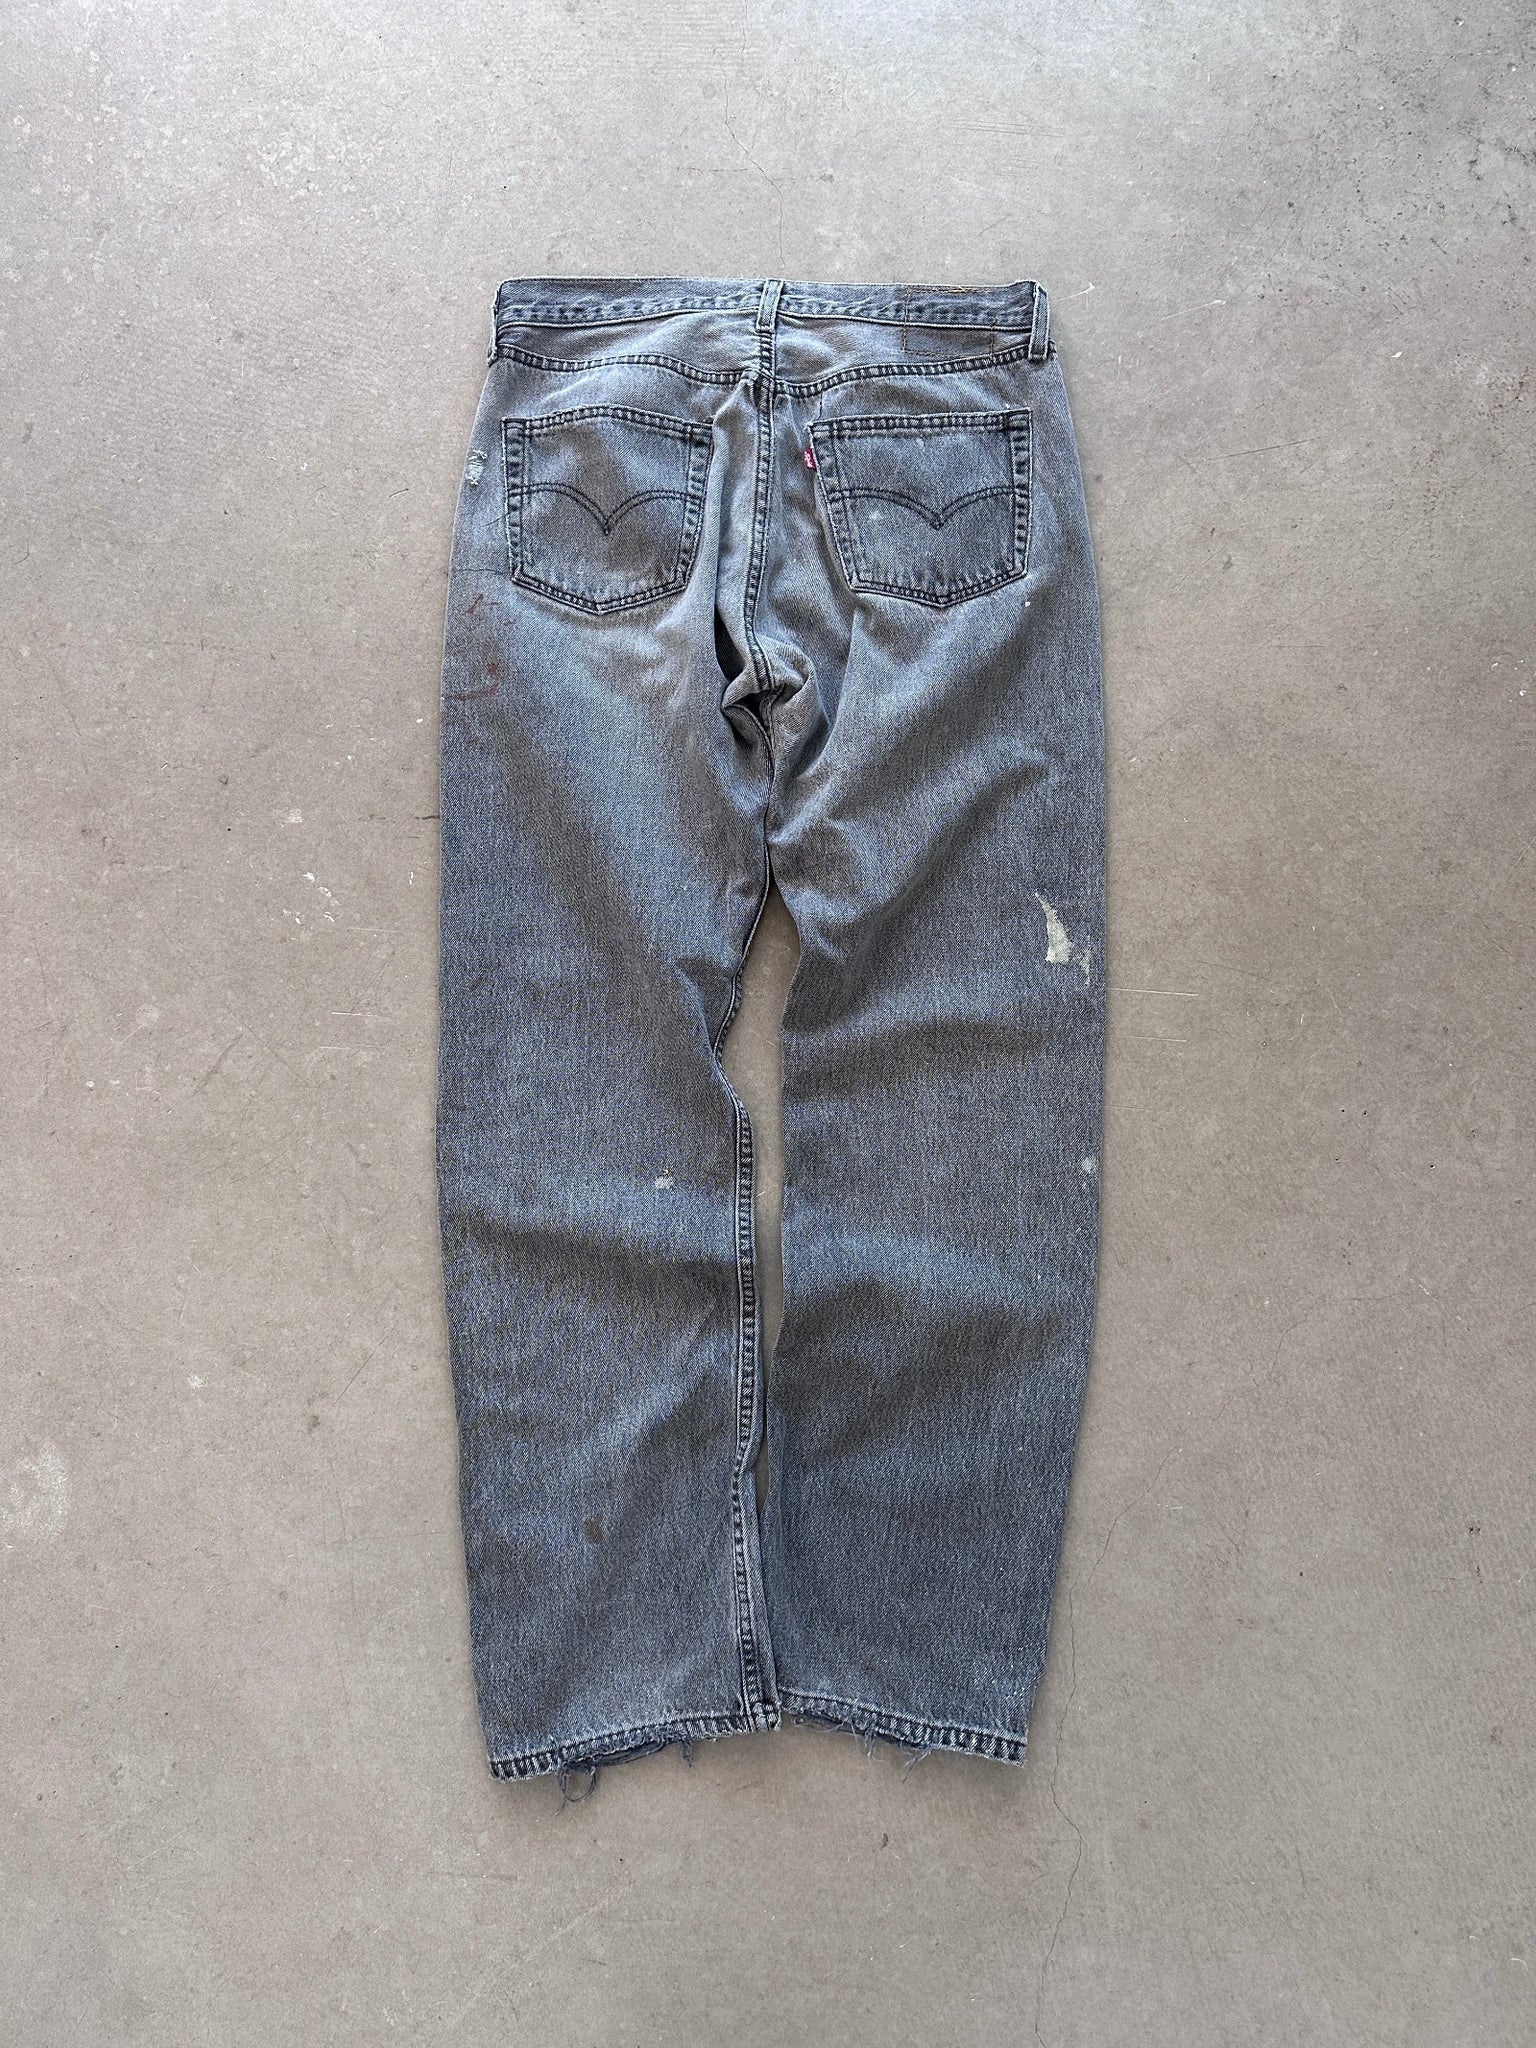 1999 Levi's 501 Jeans - 34 x 32